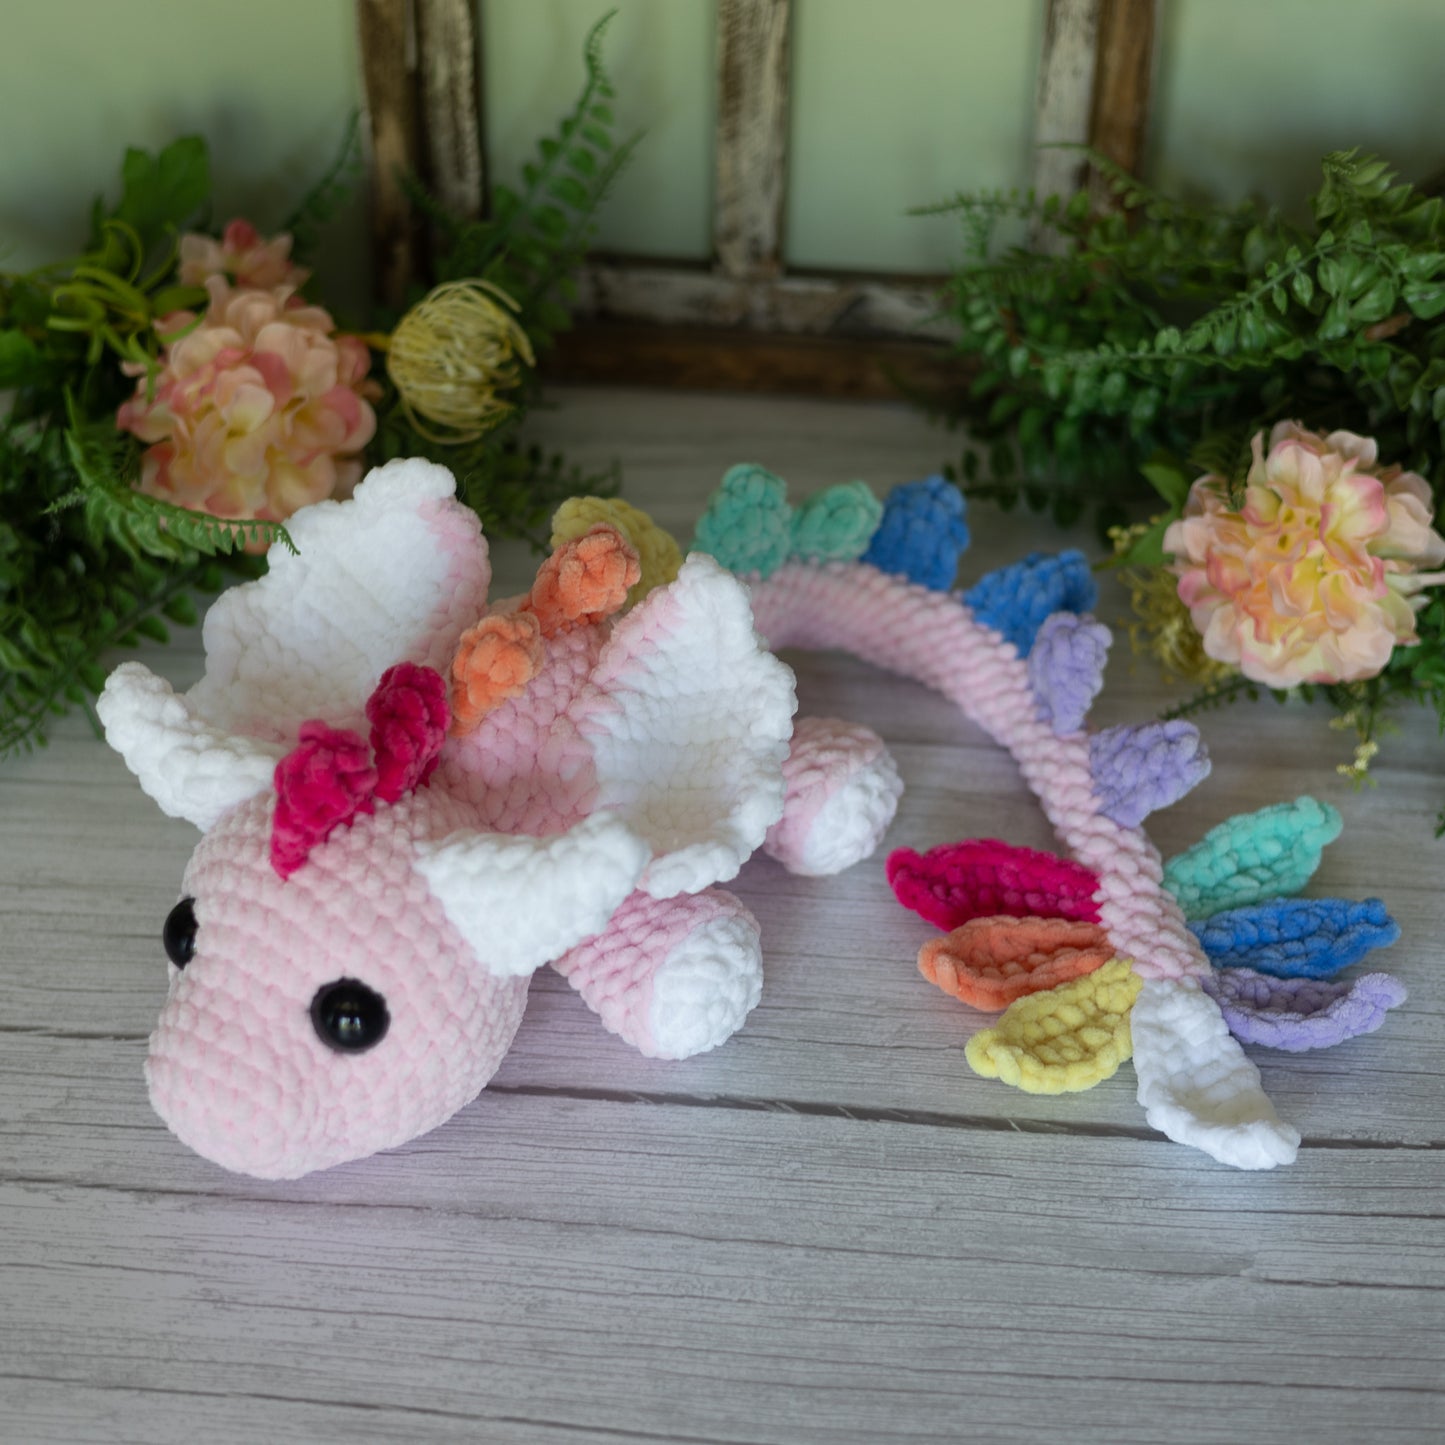 Dragon Crochet Plush Toy